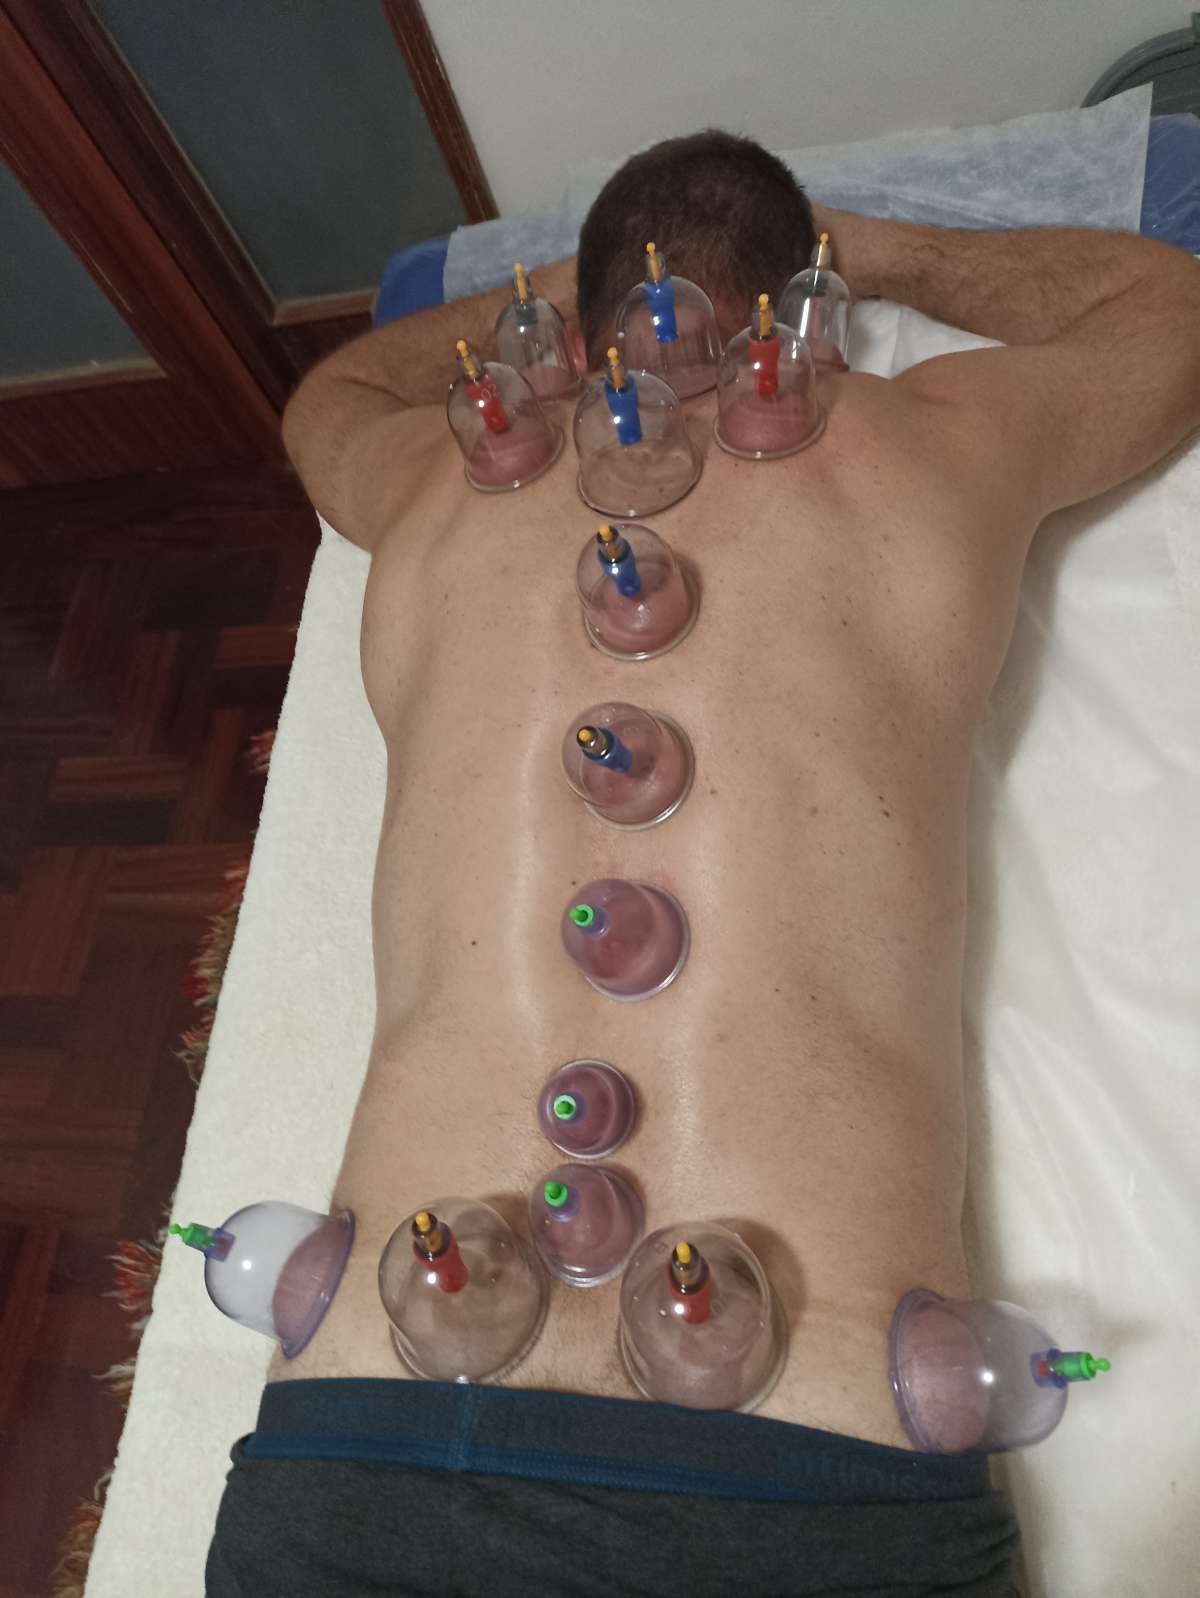 Odete.massoterapia - Vila Nova de Gaia - Massagem de Reflexologia